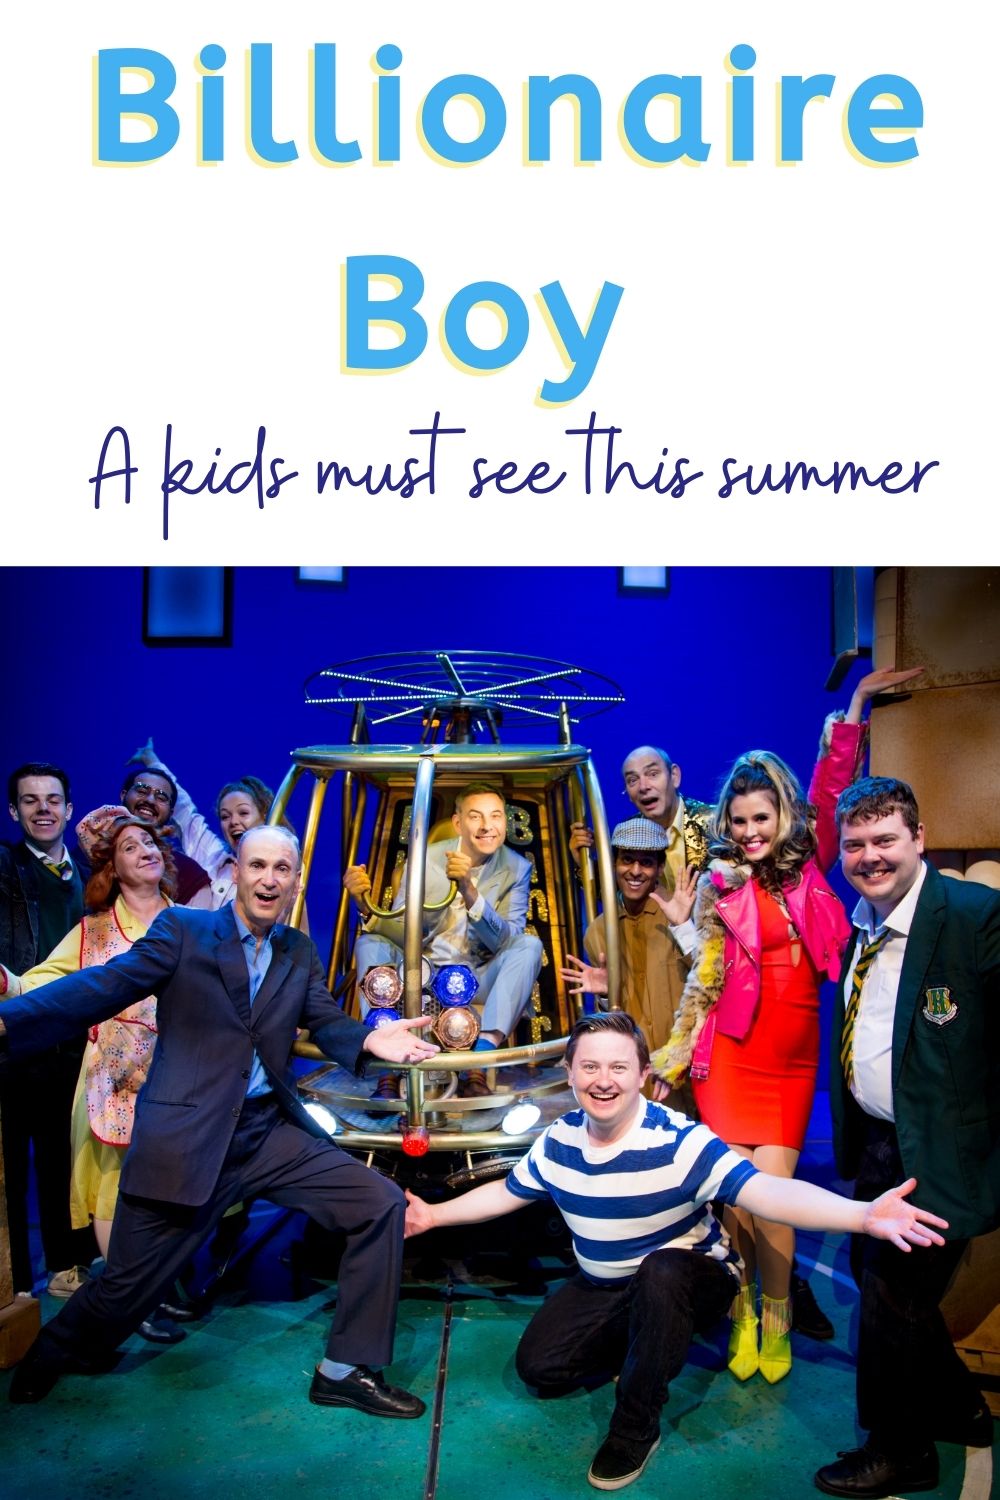 billionaire boy theatre; image of billionaire boy cast